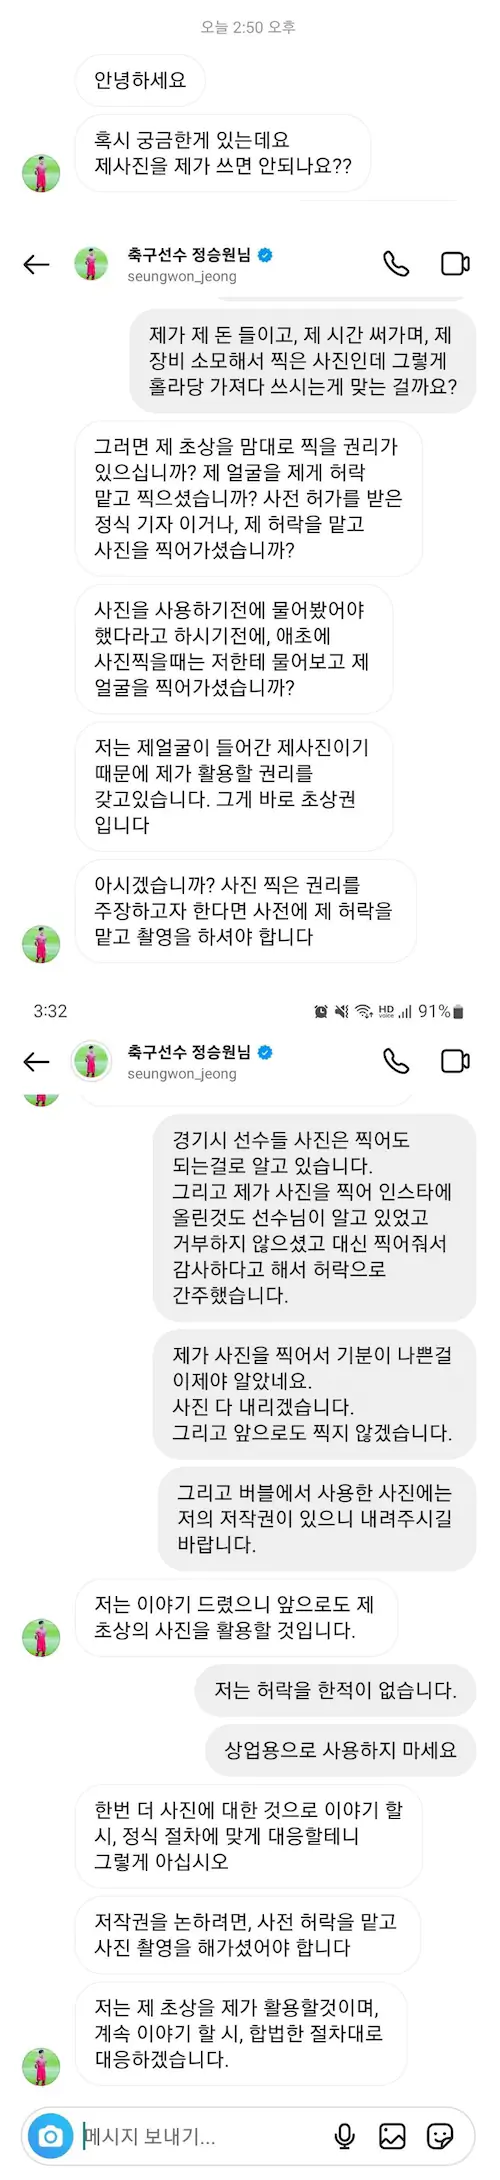 축구선수 정승원 팬 사진 저작권 위반 논란